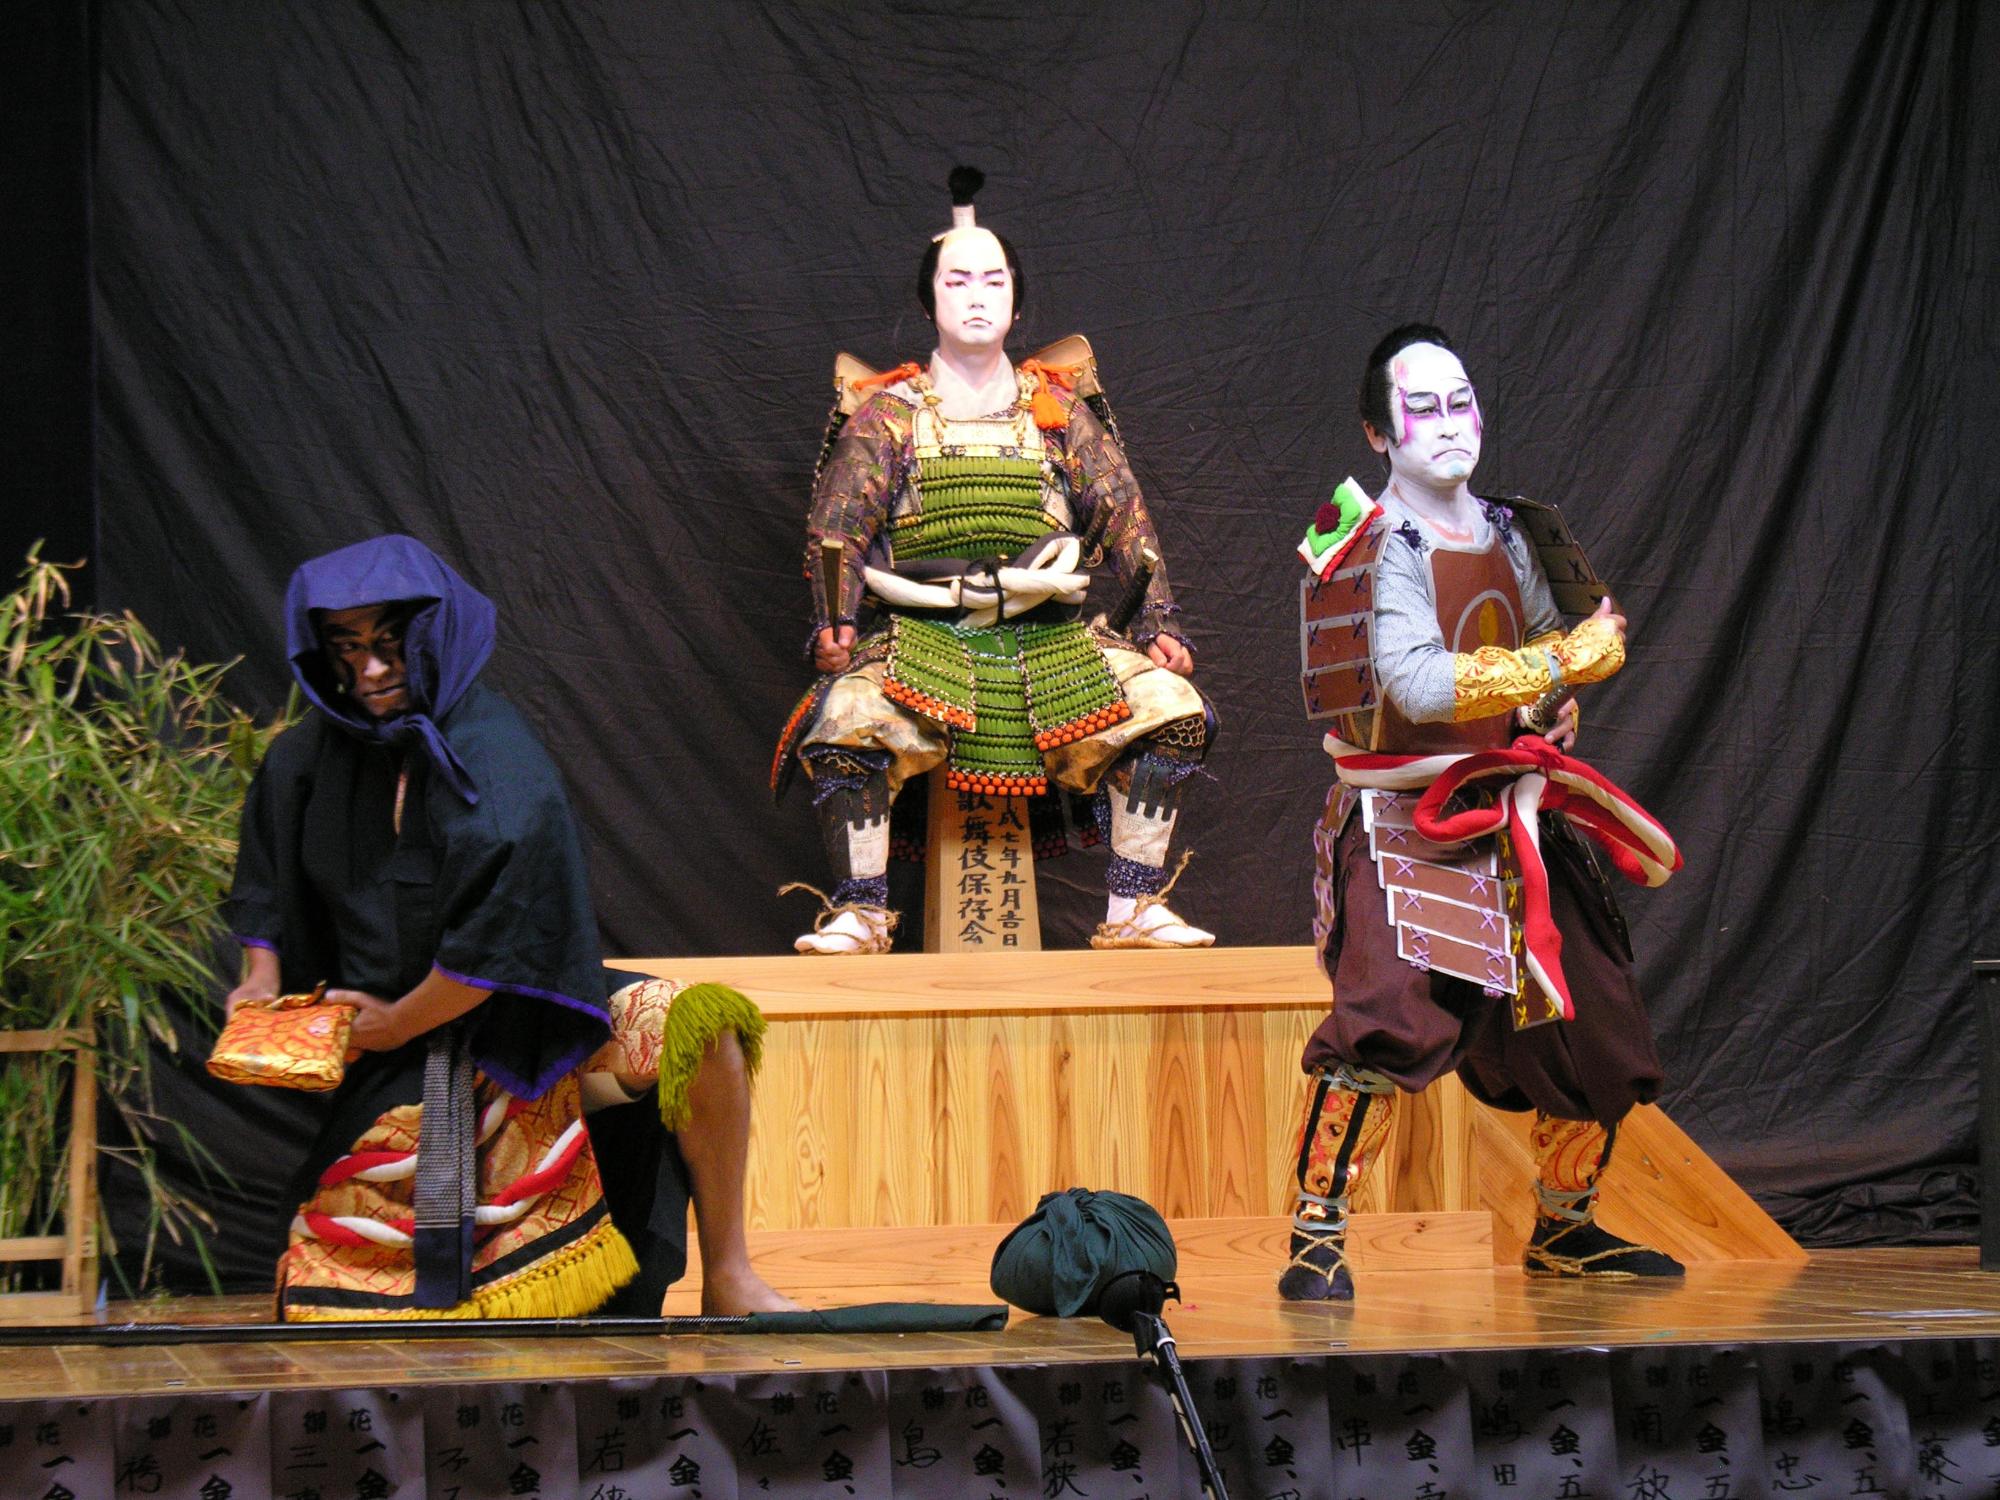 歌舞伎の衣装を着て、隈取をした3人の人物がおり、2人は立ってポーズをとり、もう1人は中央の一段高いところで椅子に腰かけ座っている歌舞伎のシーンの写真